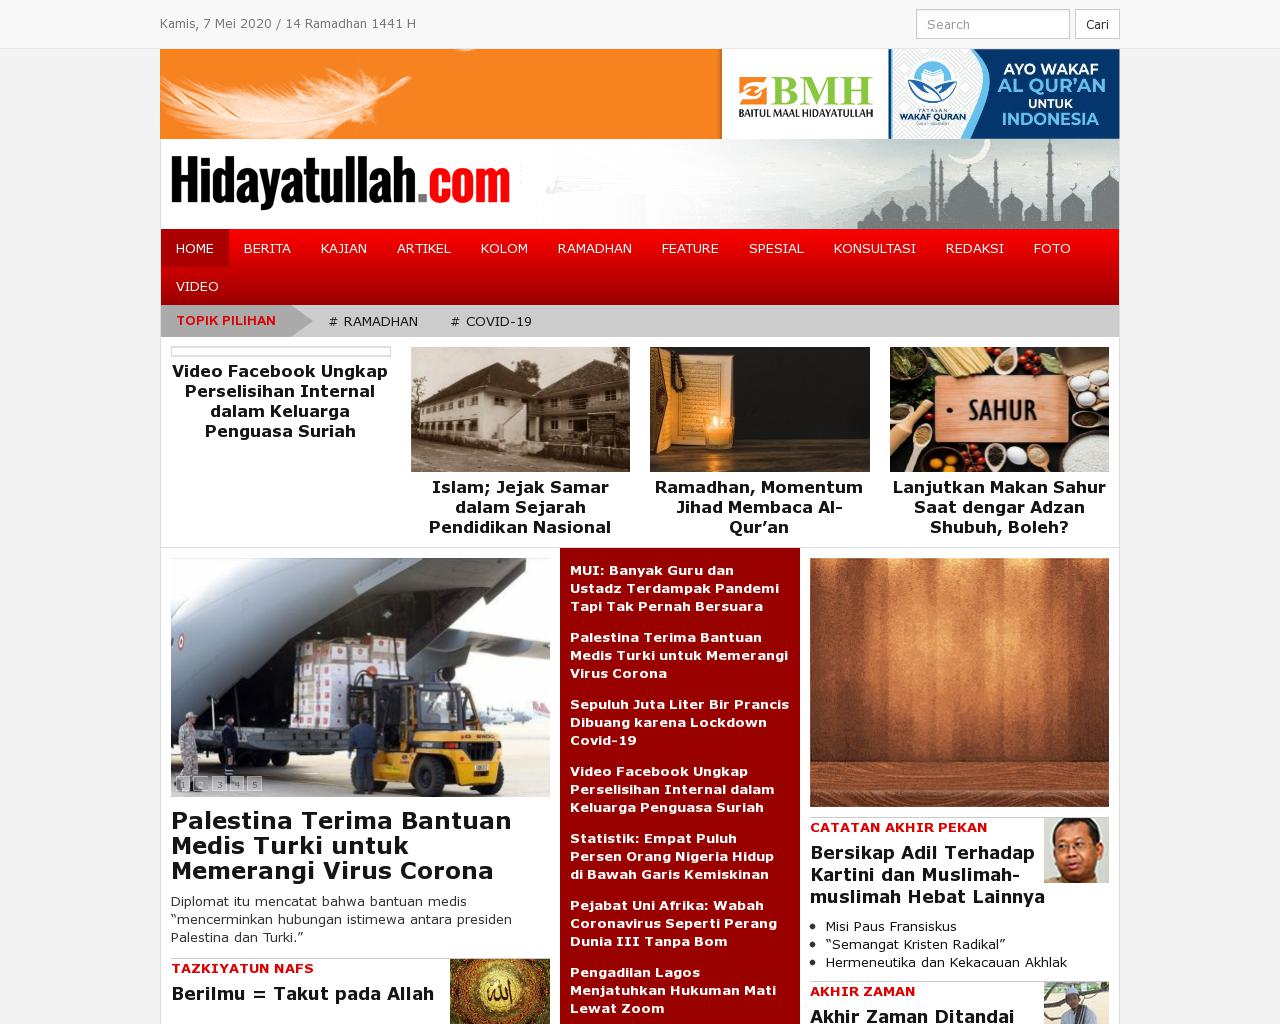 hidayatullah.com